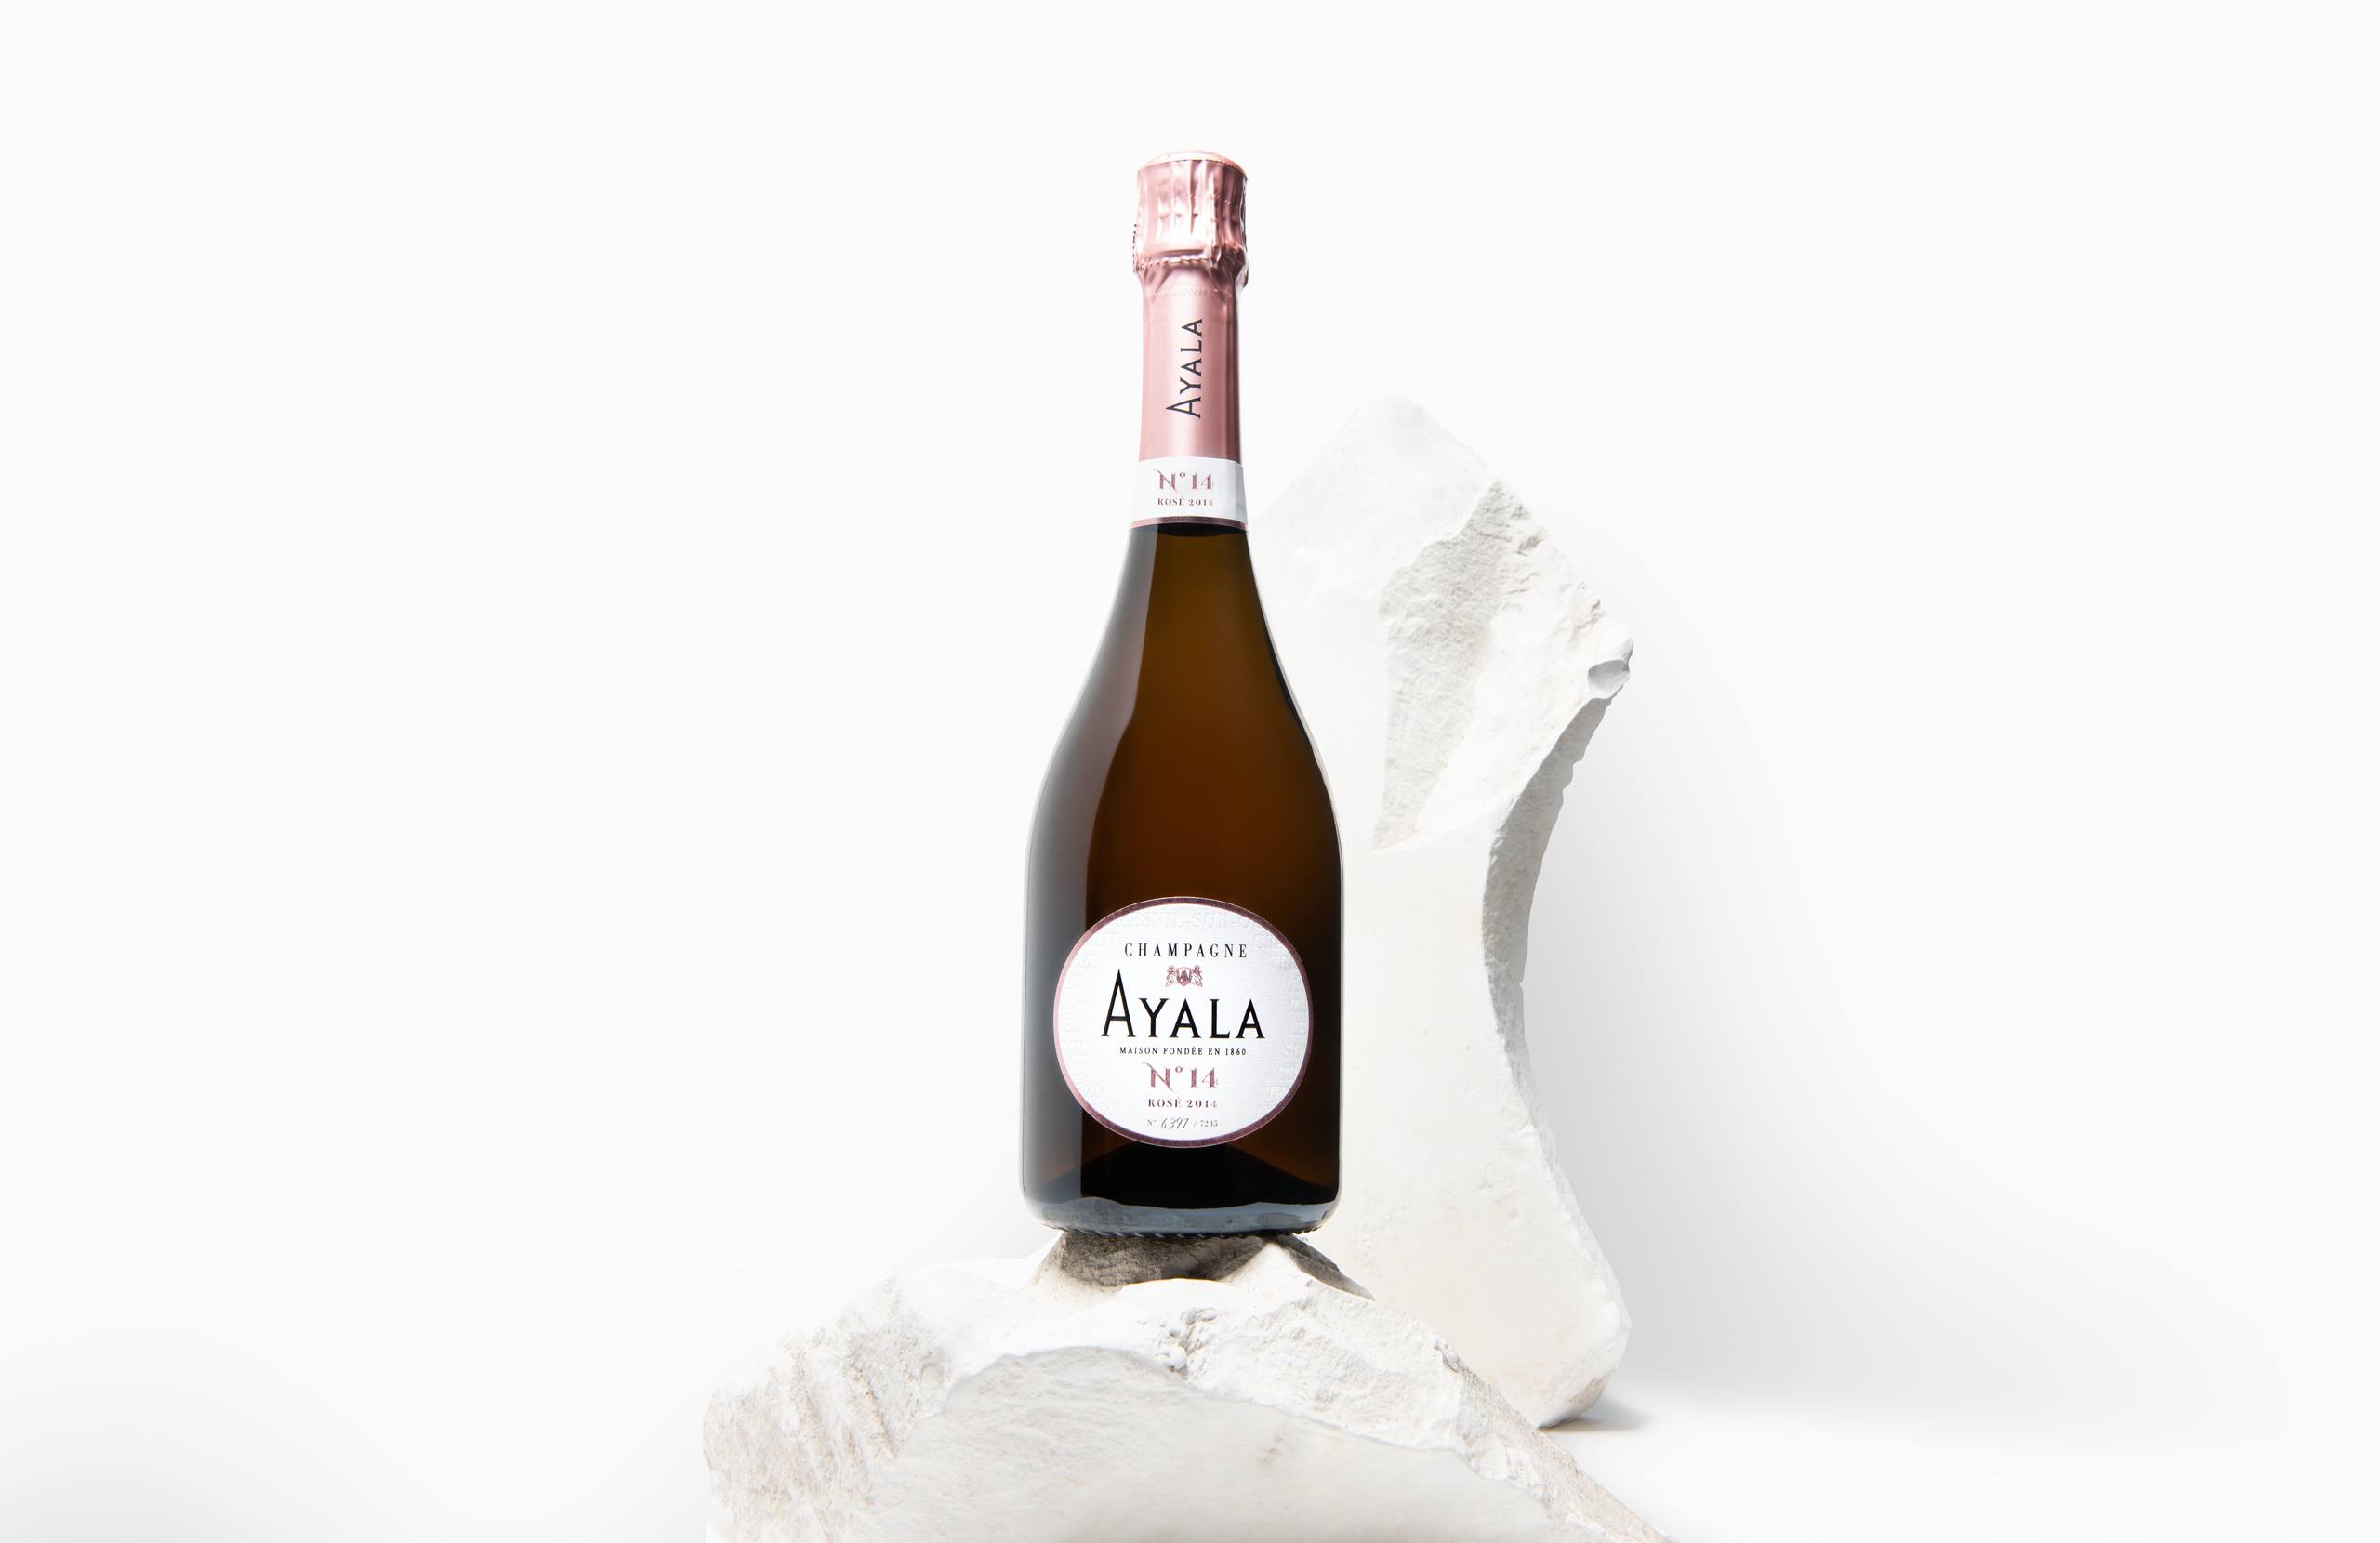  - Champagne Ayala